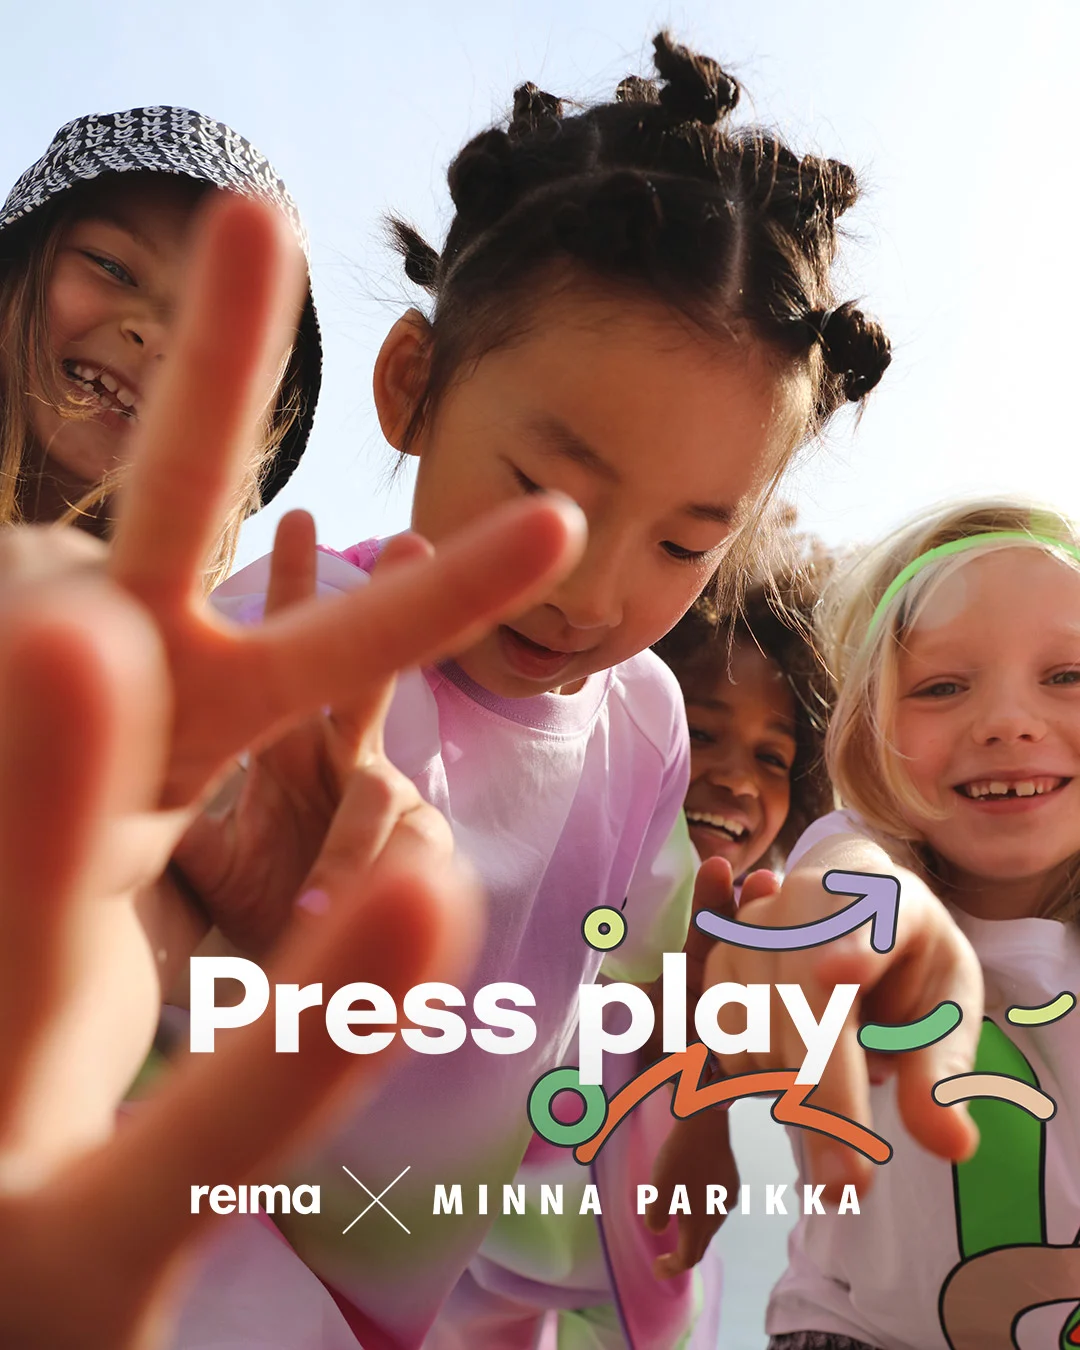 REIMA X MINNA PARIKKA - Press Play